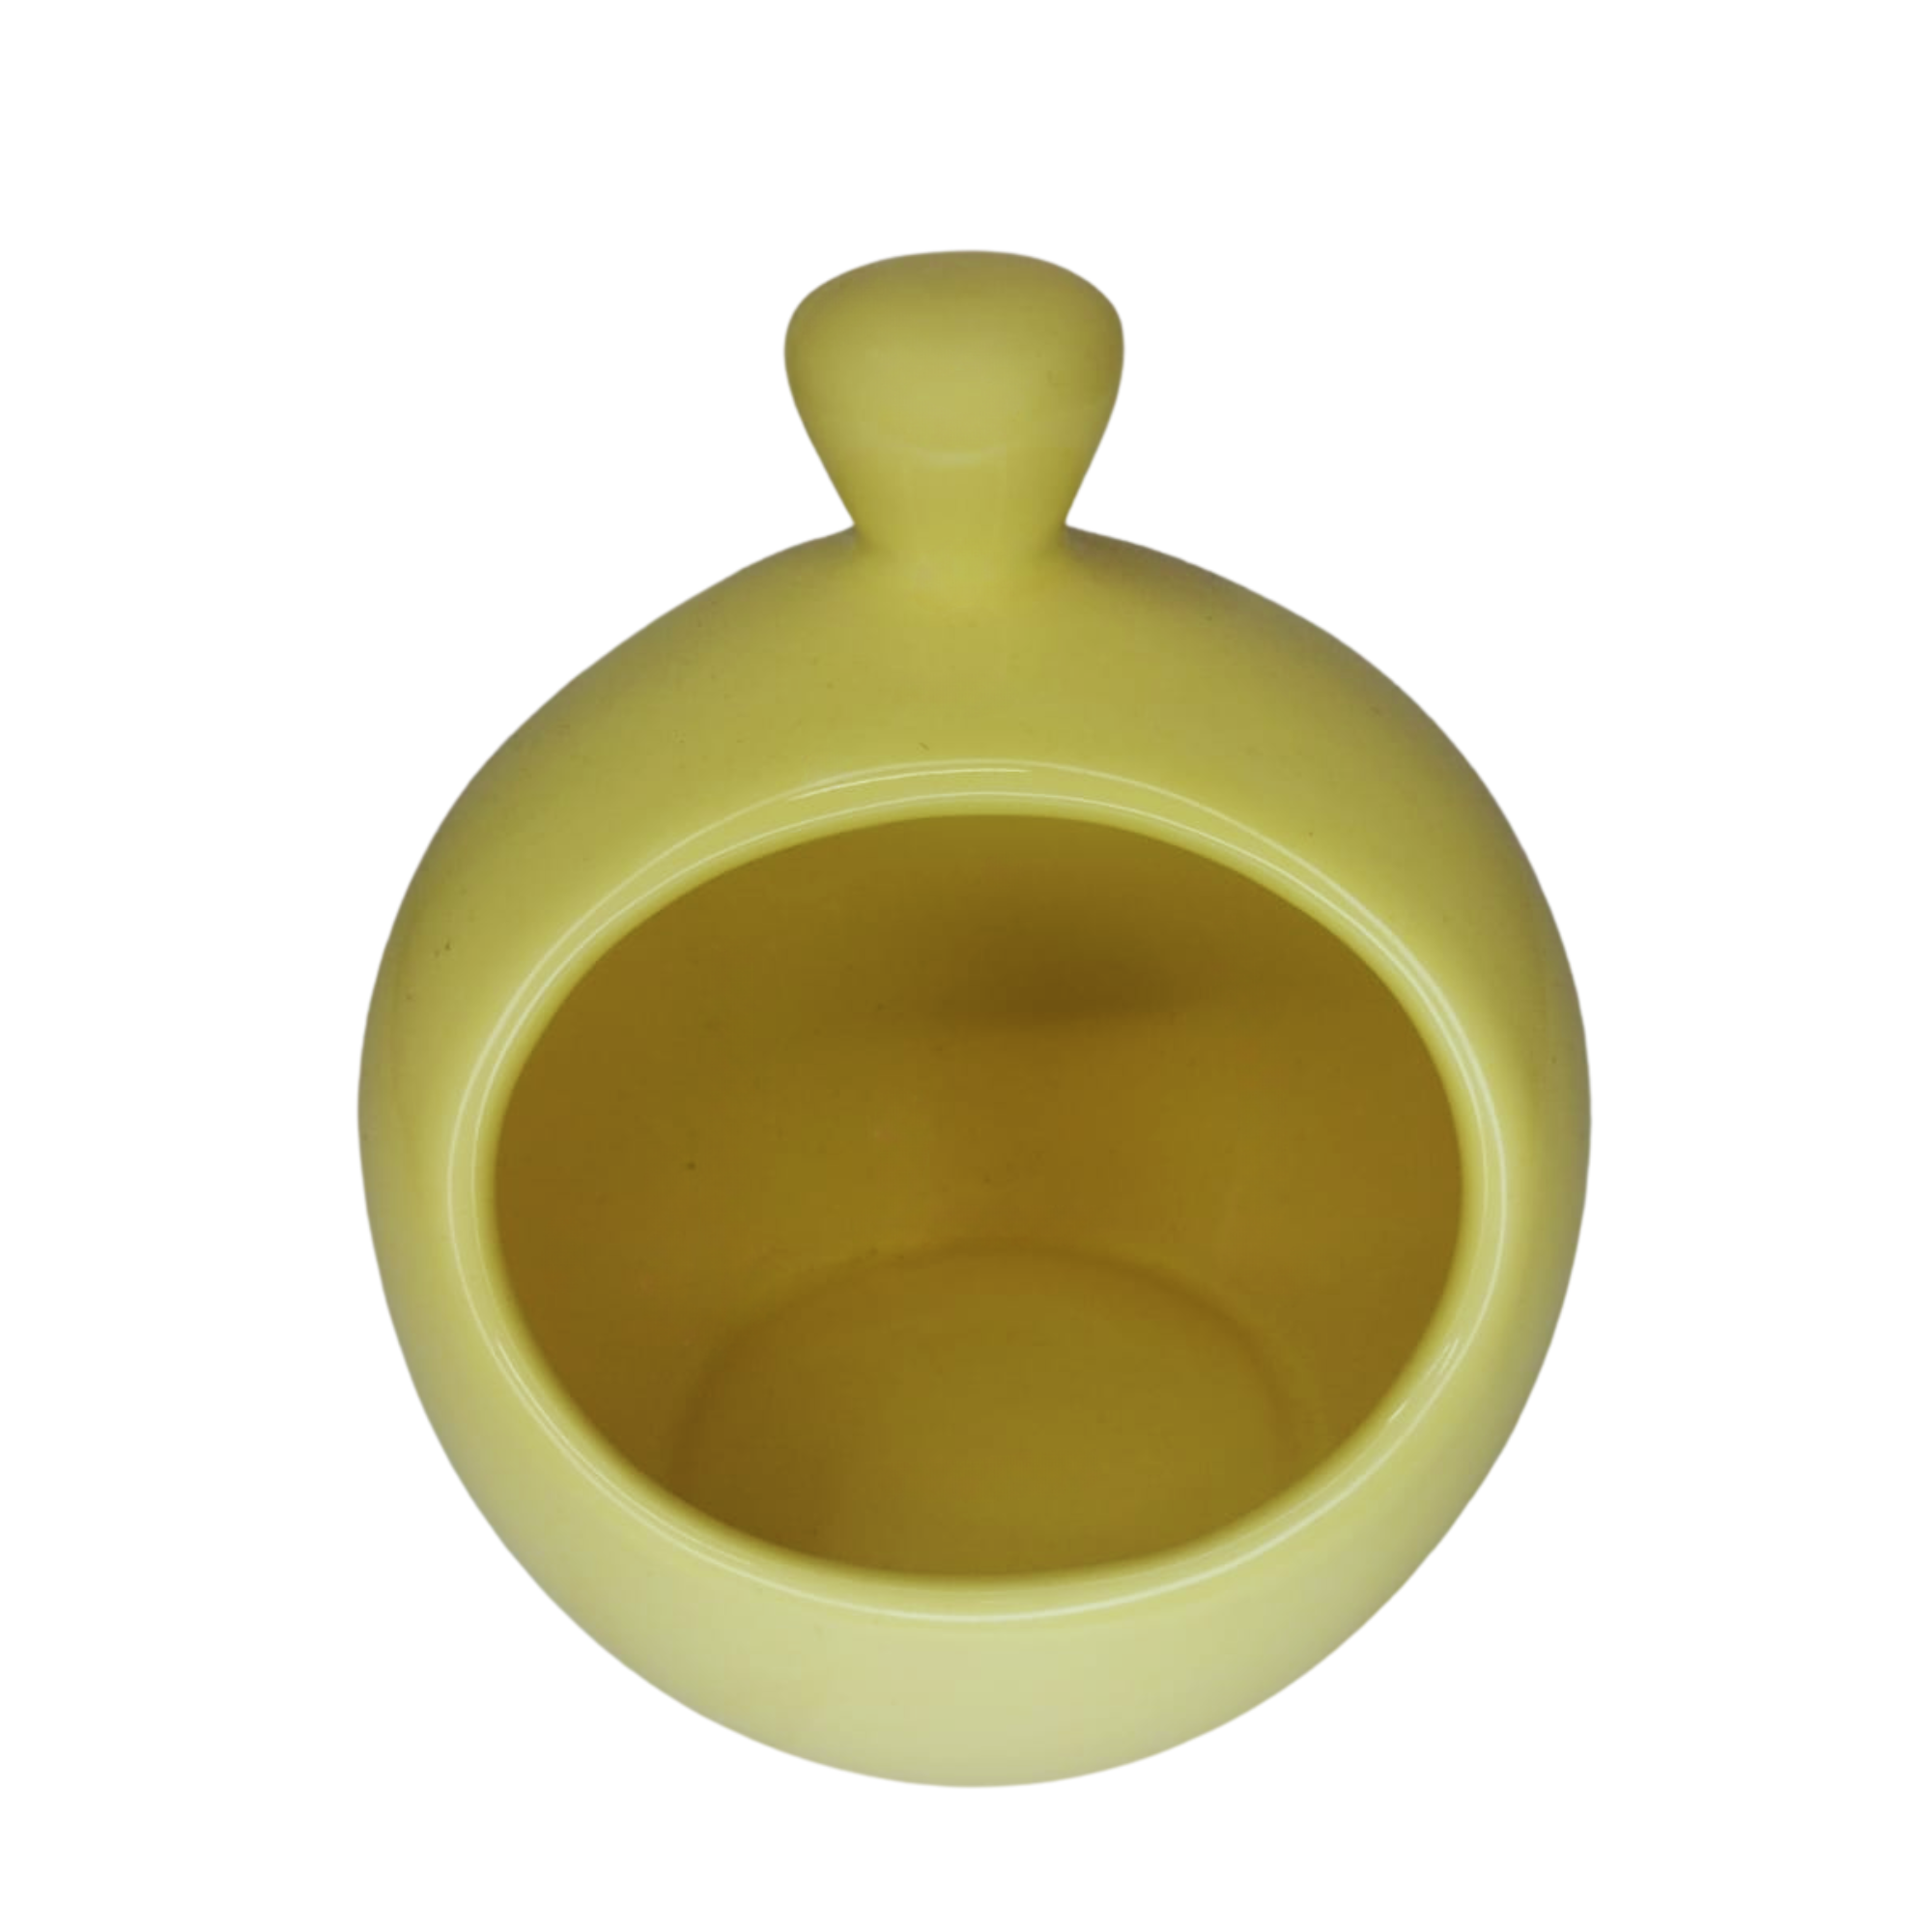 Porta Alho de Cerâmica - Um Toque de Charme e Praticidade para Sua Cozinha!:amarelo